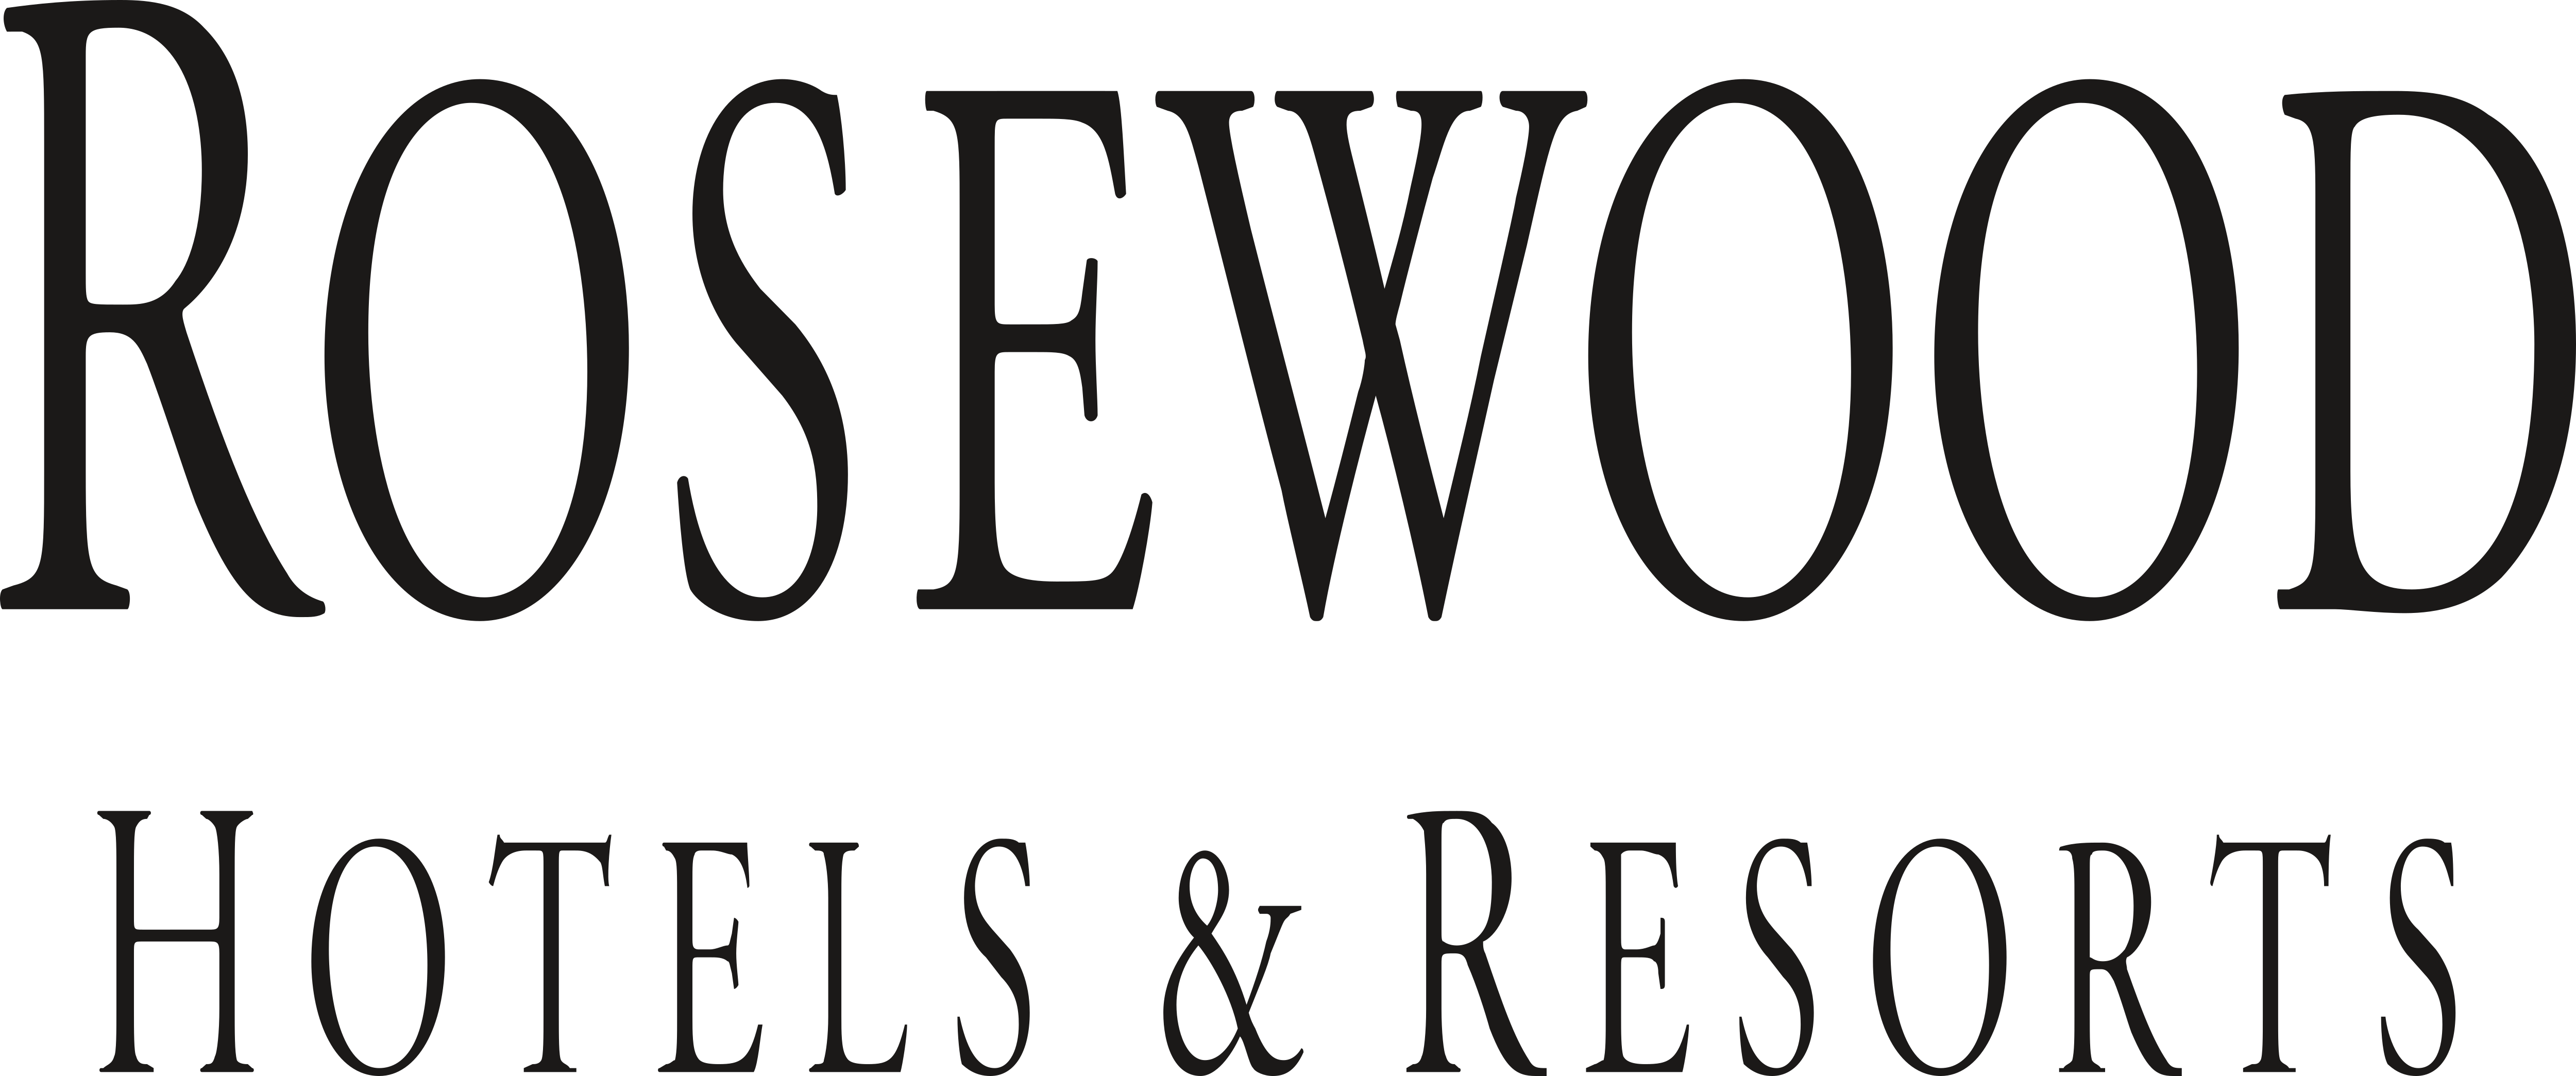 Rosewood Logo - Rosewood Hotel & Resorts – Logos Download